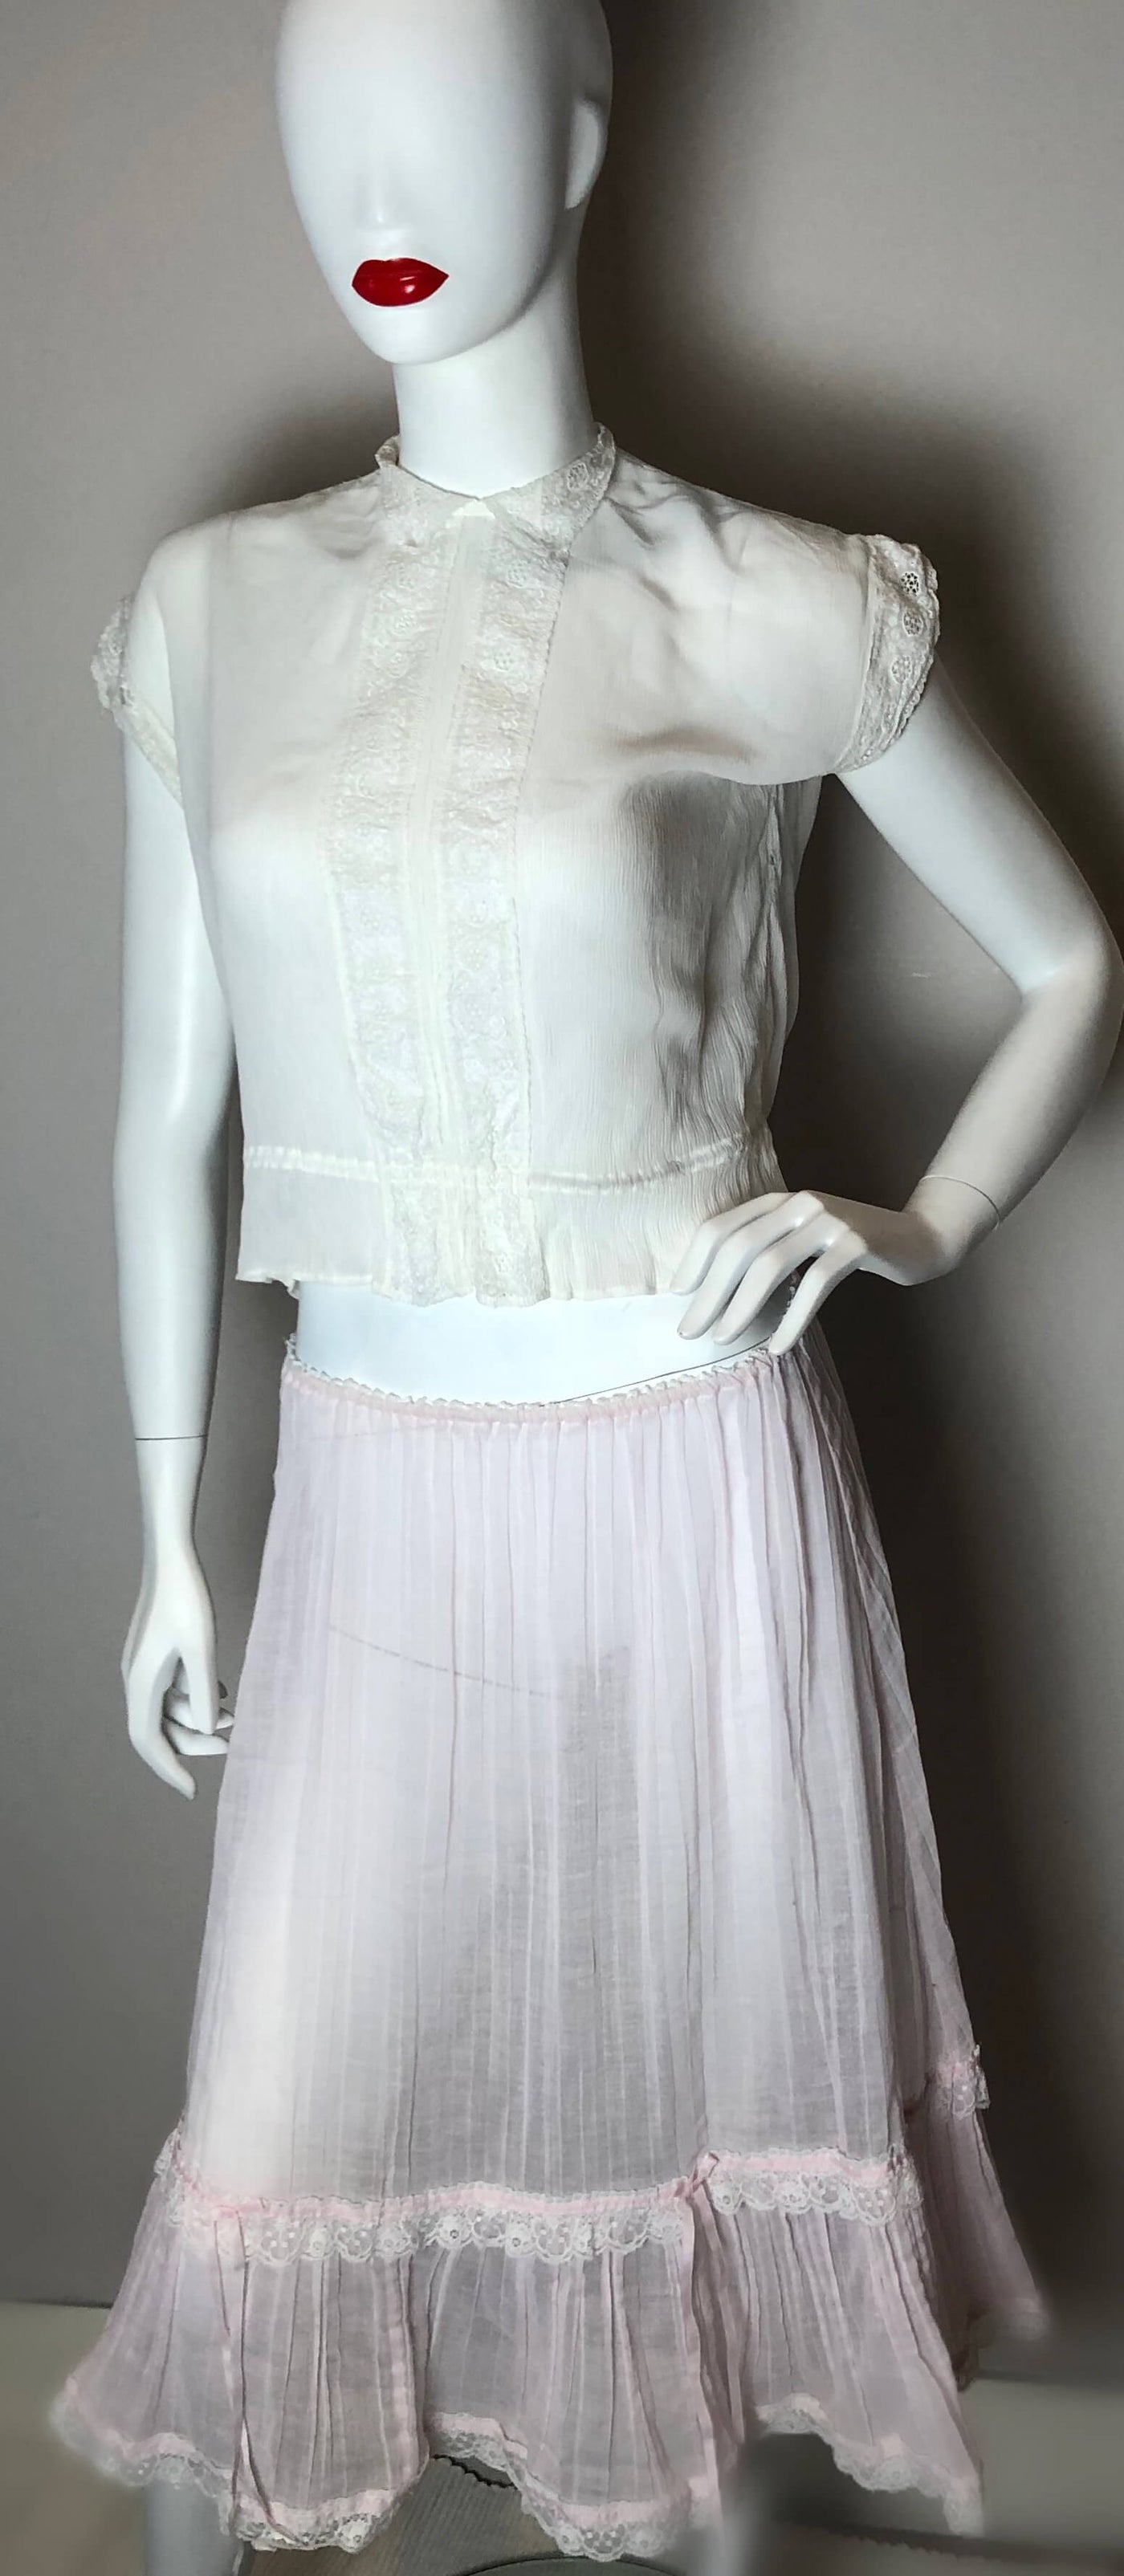 Pale pink Janet Reger skirt